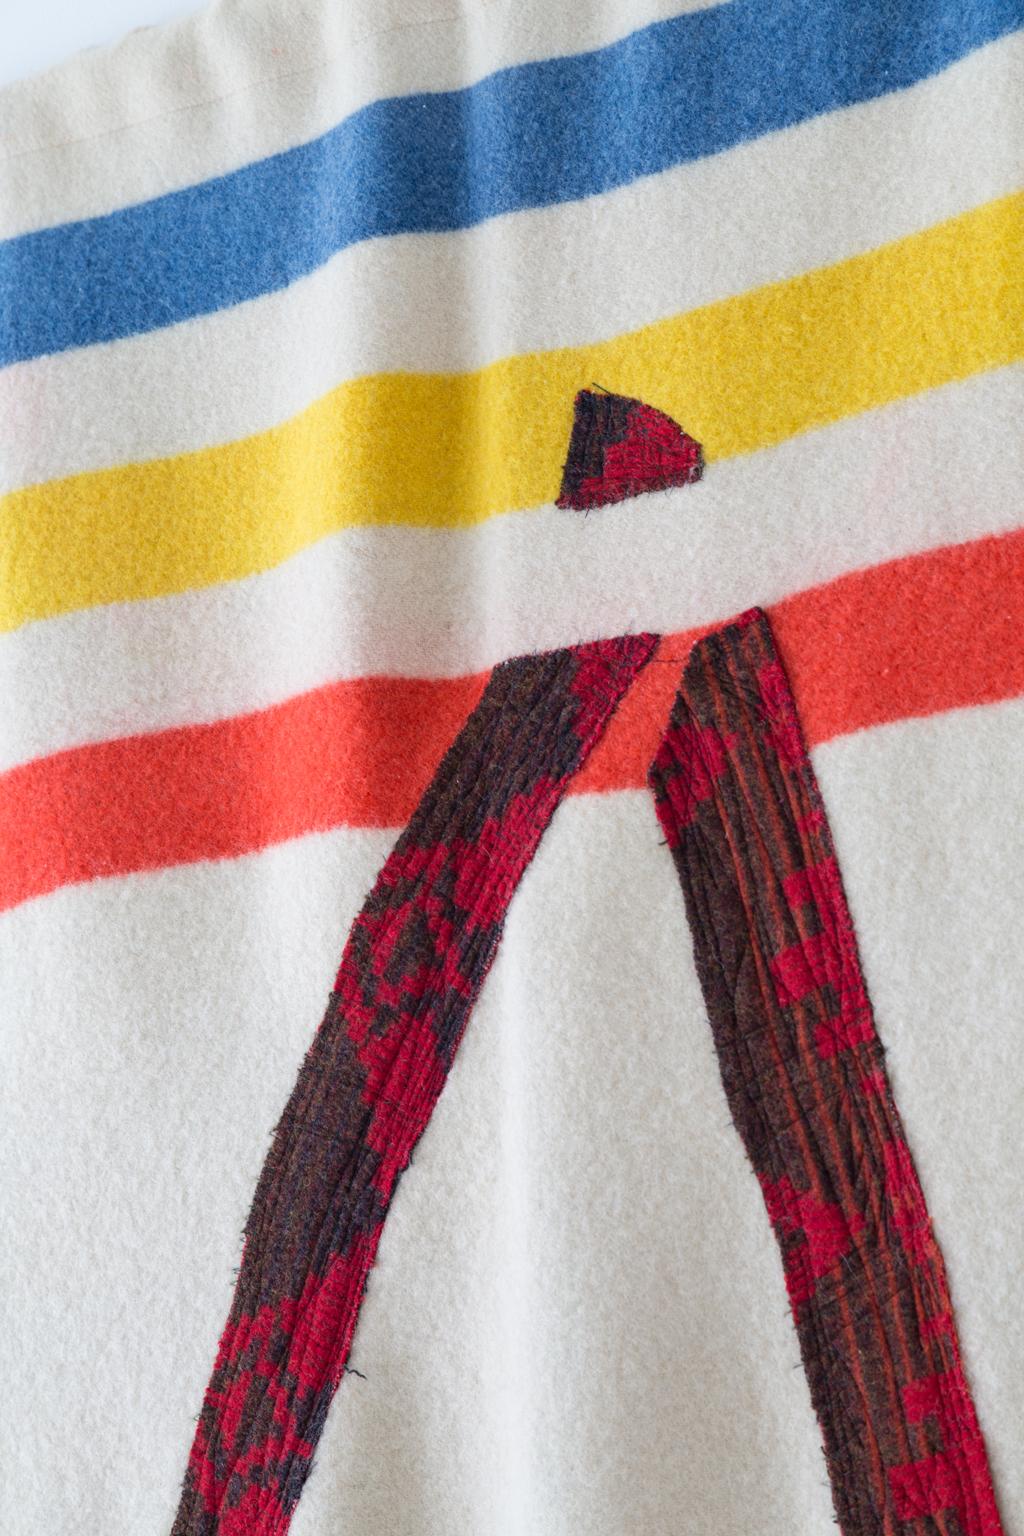 Dans le cadre du Blanket Project, Naomi Clark crée ce qu'elle appelle des Quilt Paintings. Elle redonne vie à de vieilles couvertures de camping en laine et en coton récupérées sur EBay, dans des marchés aux puces et des ventes de garage. Naomi